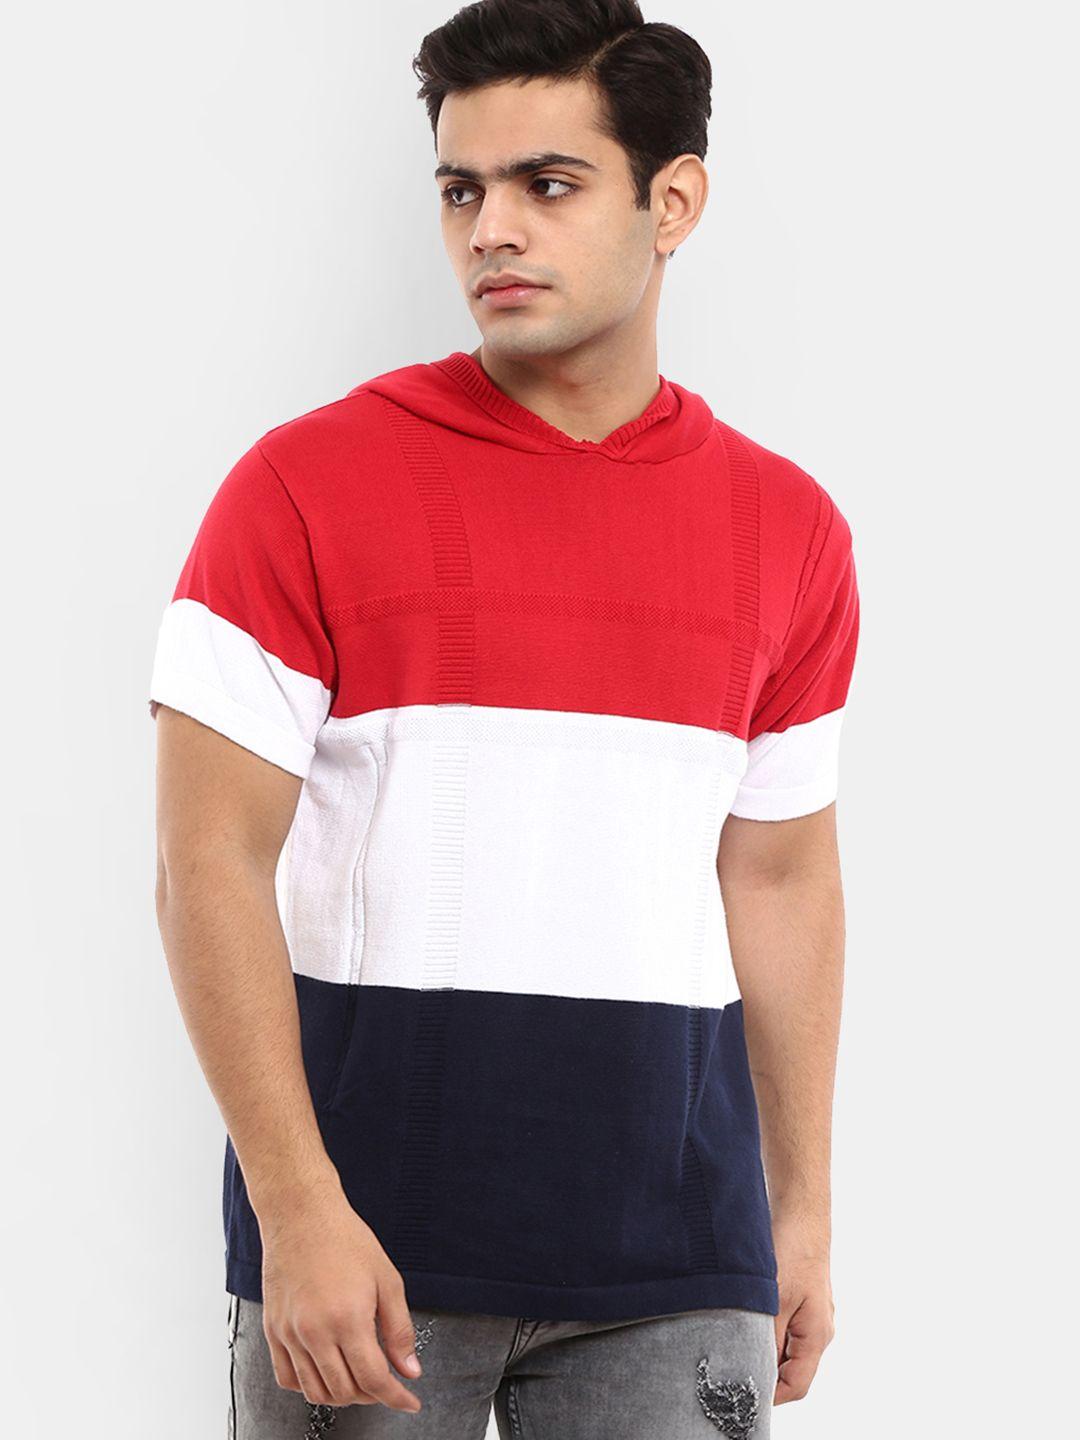 v-mart men red & white colourblocked slim fit t-shirt